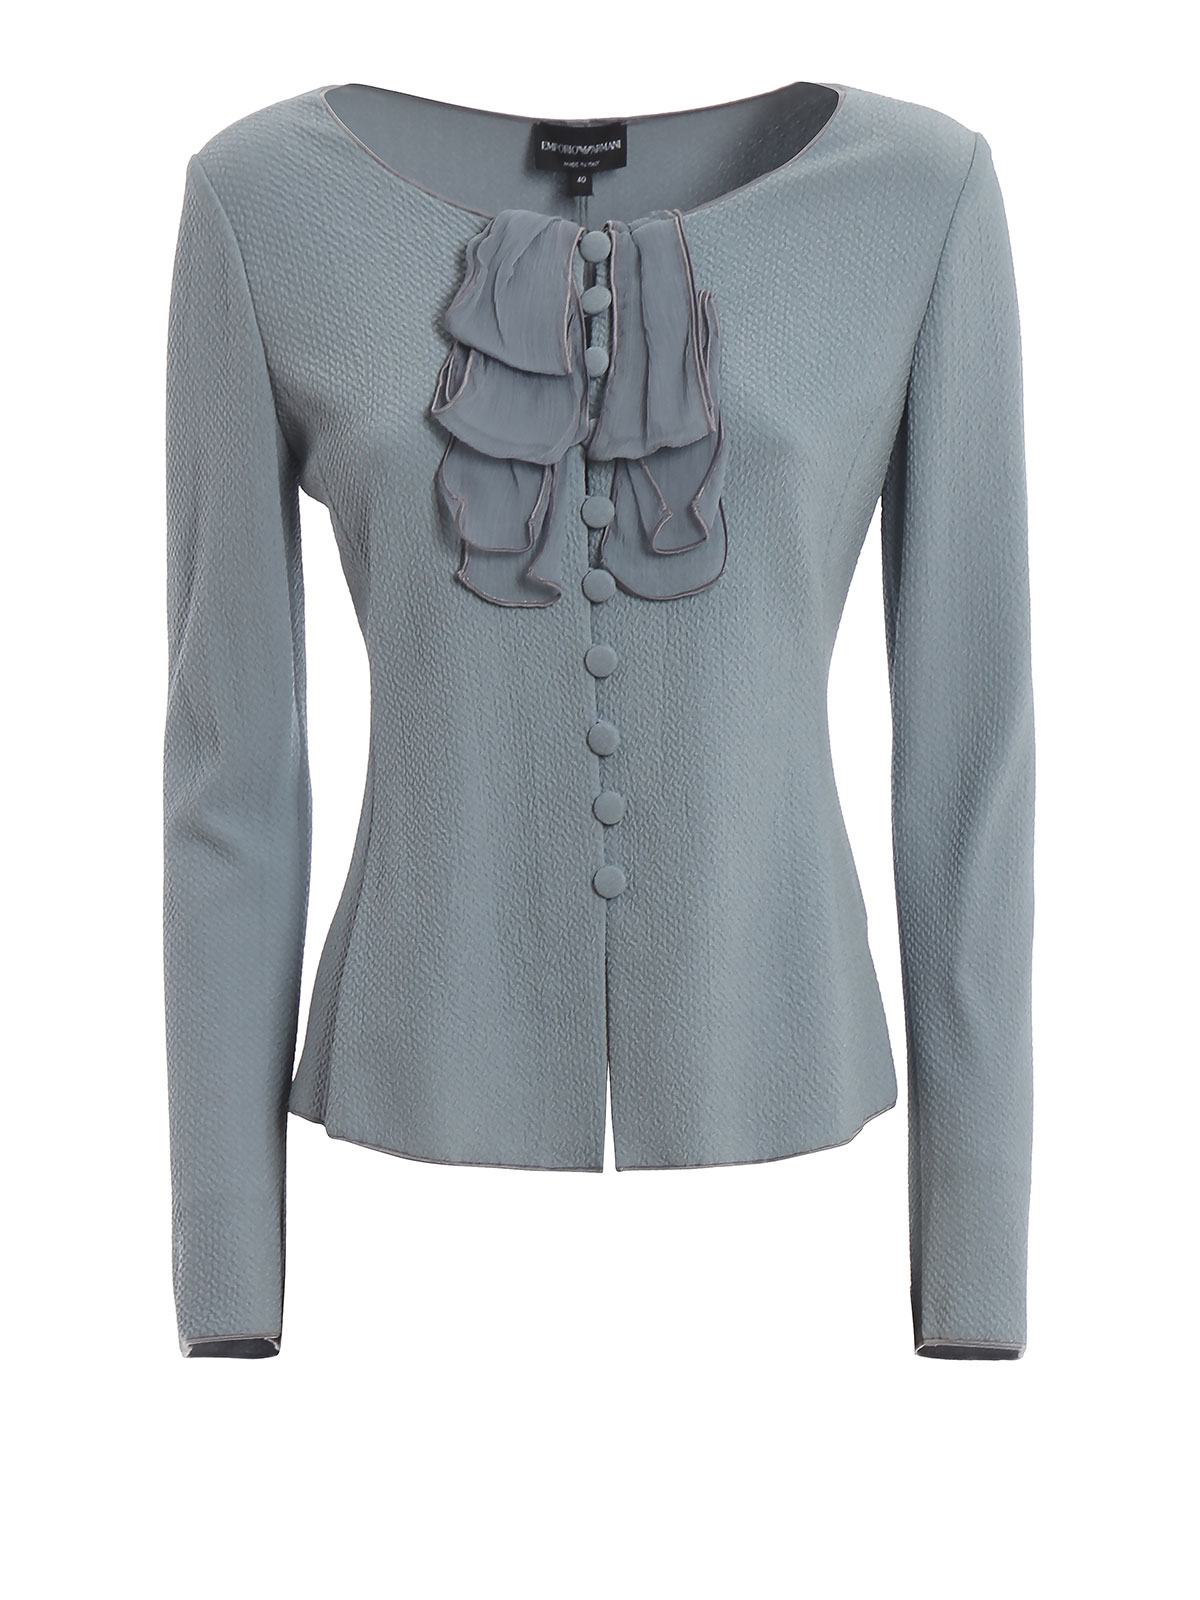 Tailored & Dinner Emporio Armani - Seersucker jacket with silk details -  3G2G6F2JDJZ0713